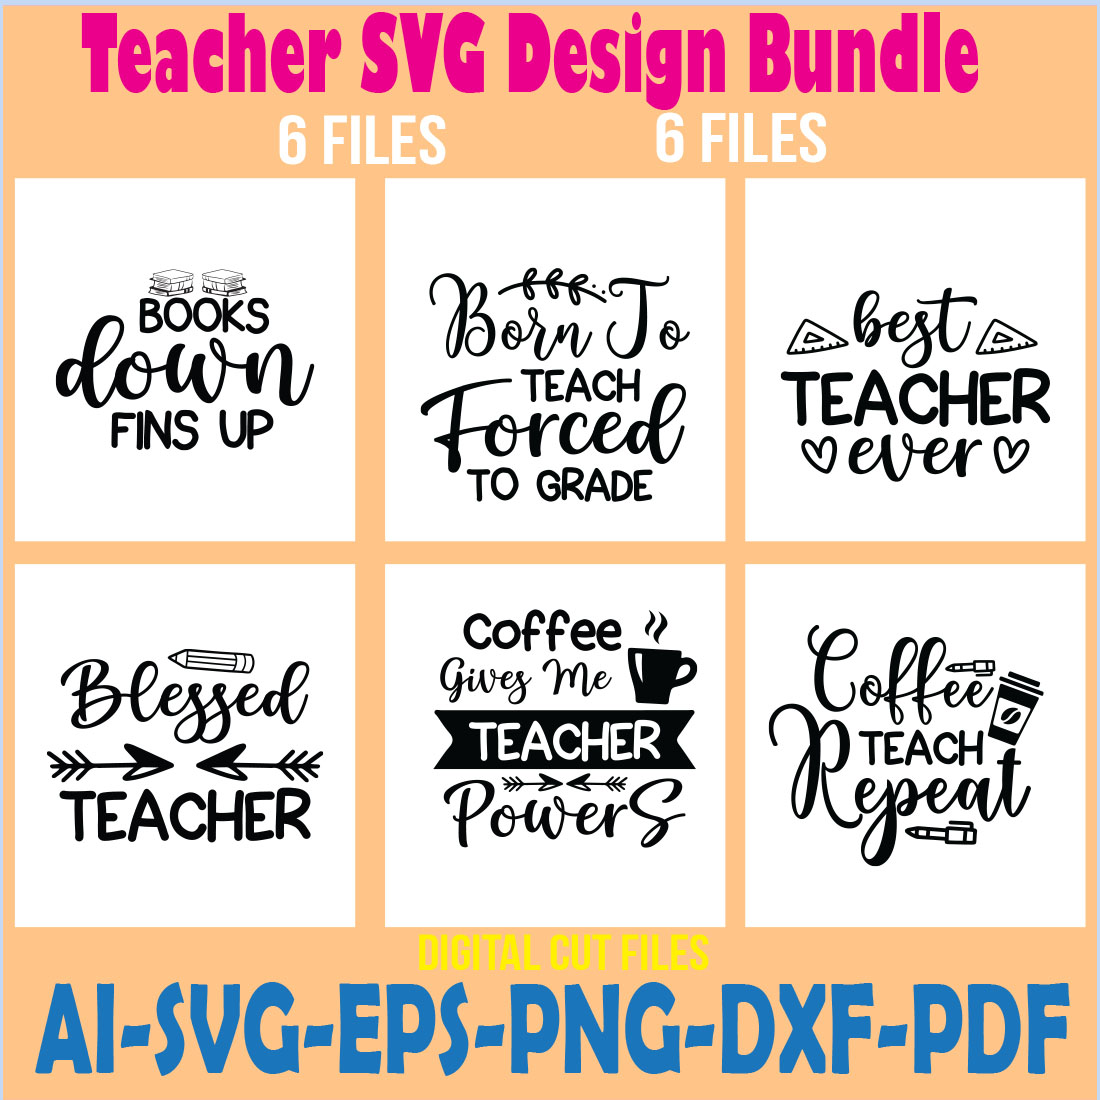 Teacher SVG Design Bundle cover image.